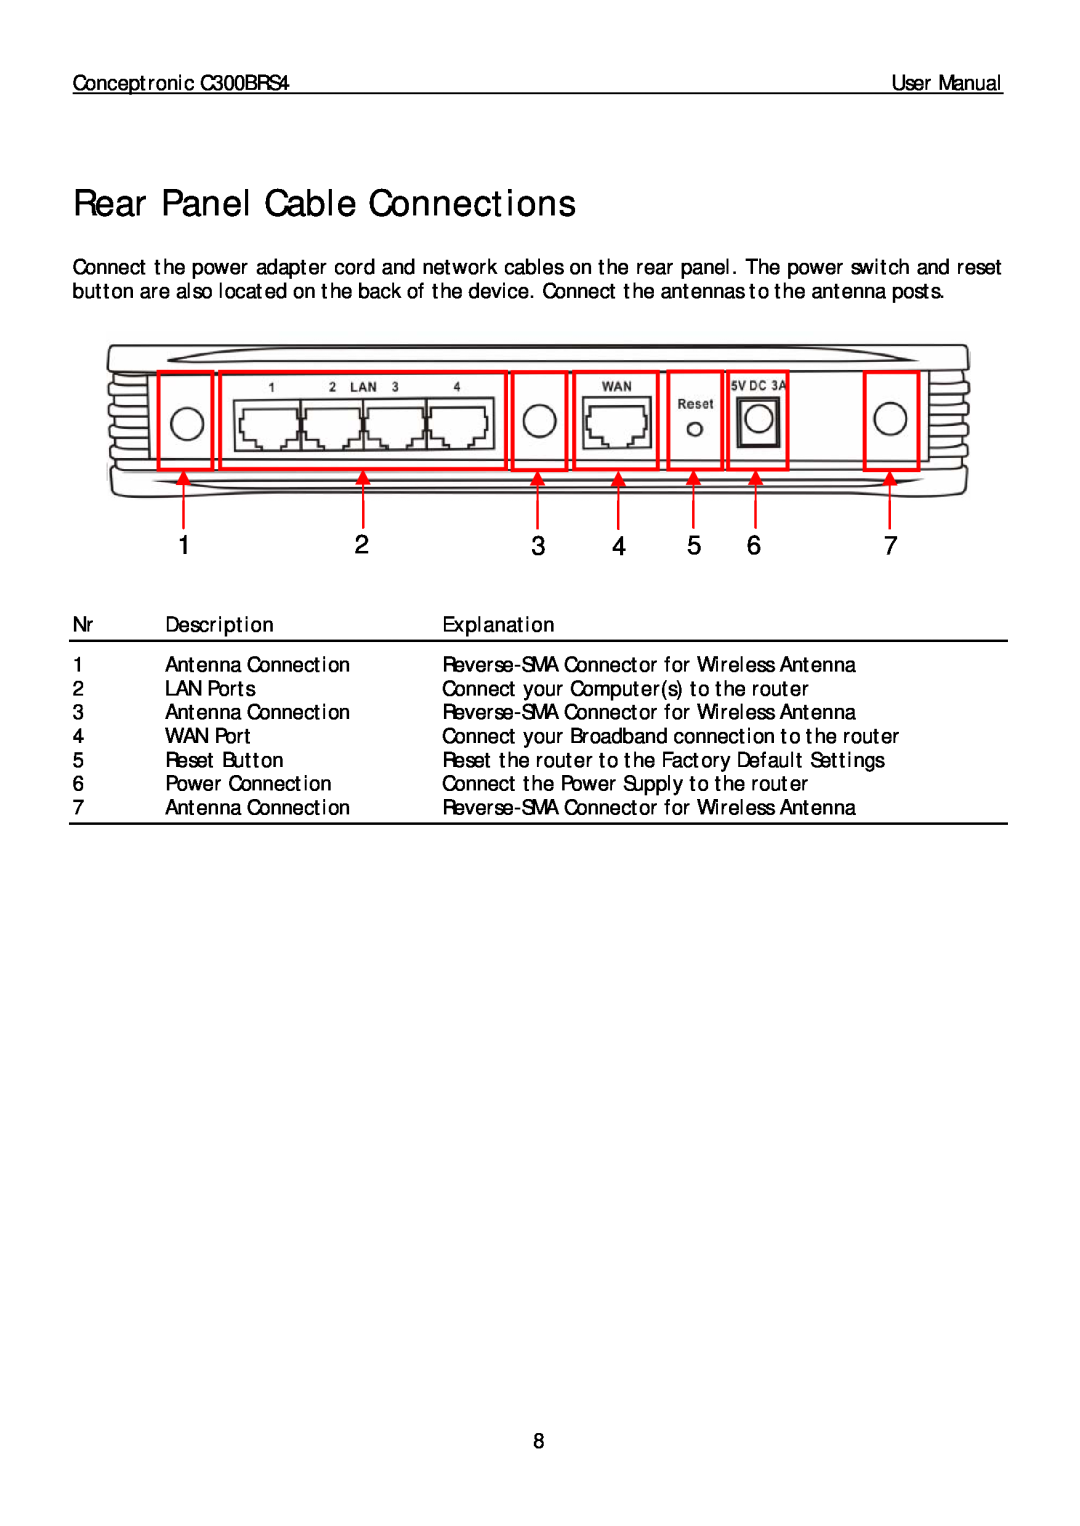 Conceptronic C300BRS4 user manual Rear Panel Cable Connections, Description, Explanation 